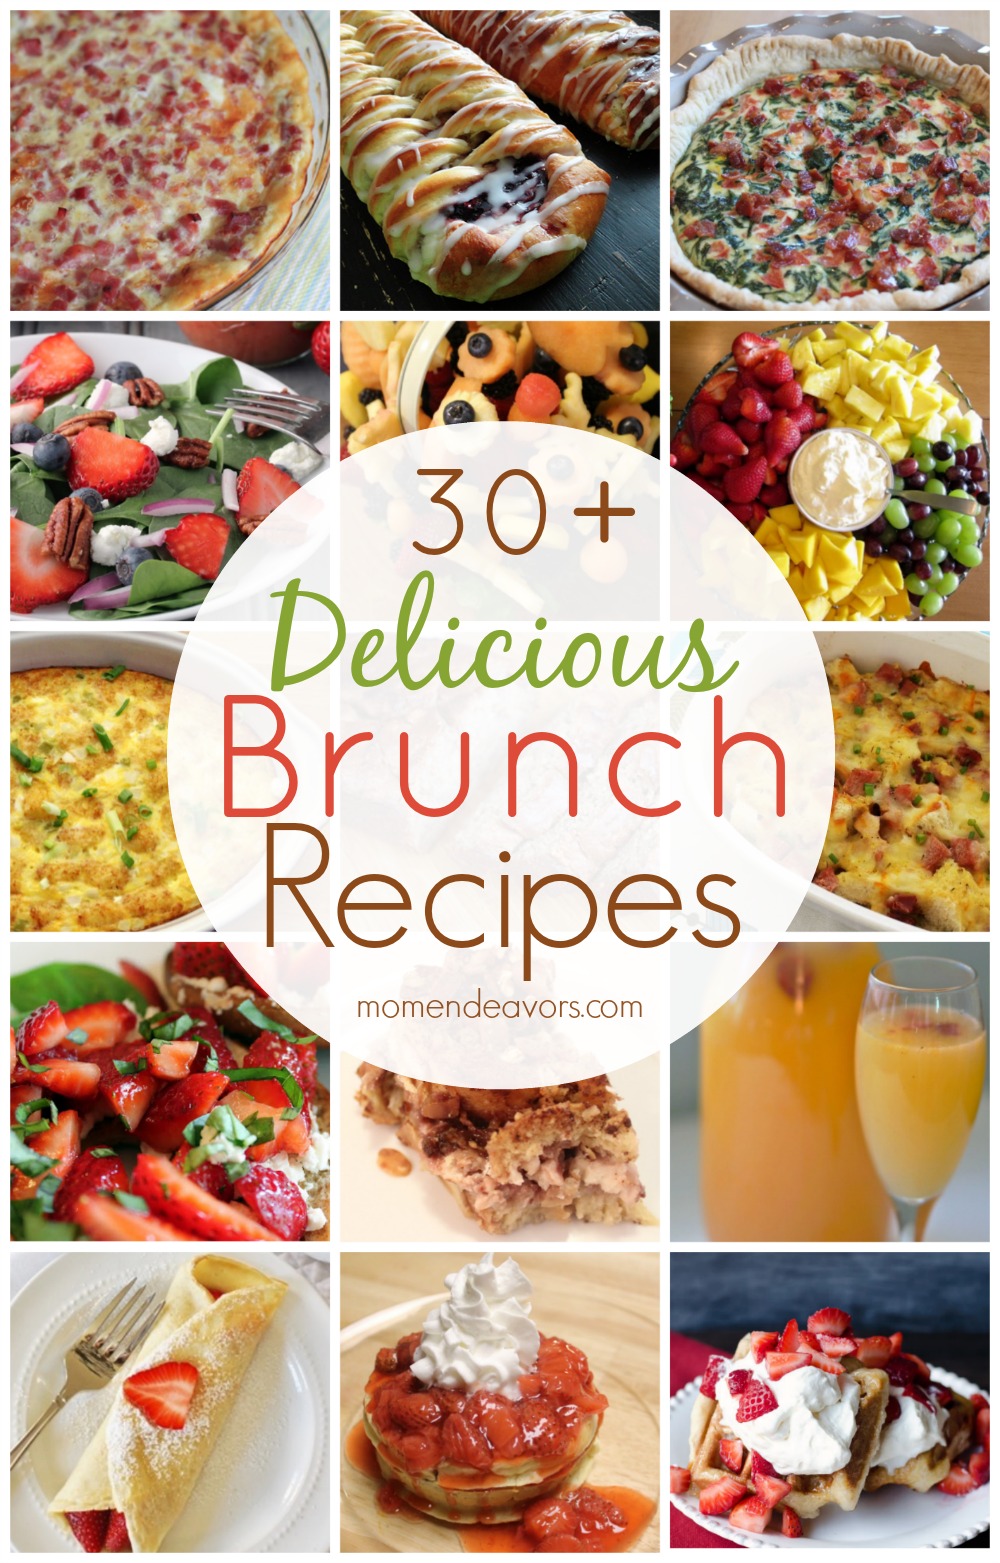 30+ Delicious Brunch Recipes